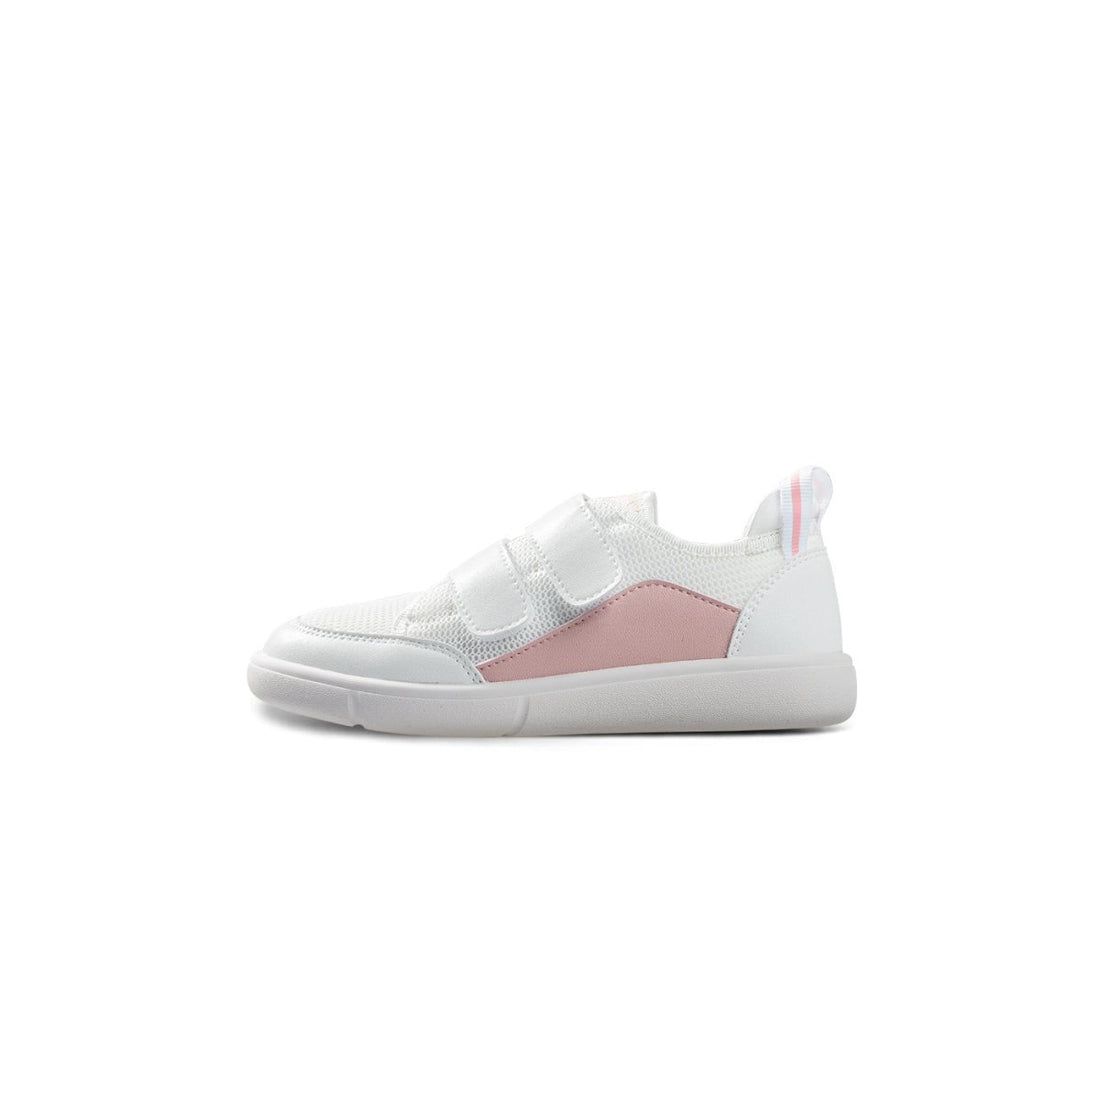 Max Comfort Soft Sole Anti-slip Girl Pink Indoor School Shoes - 0cm